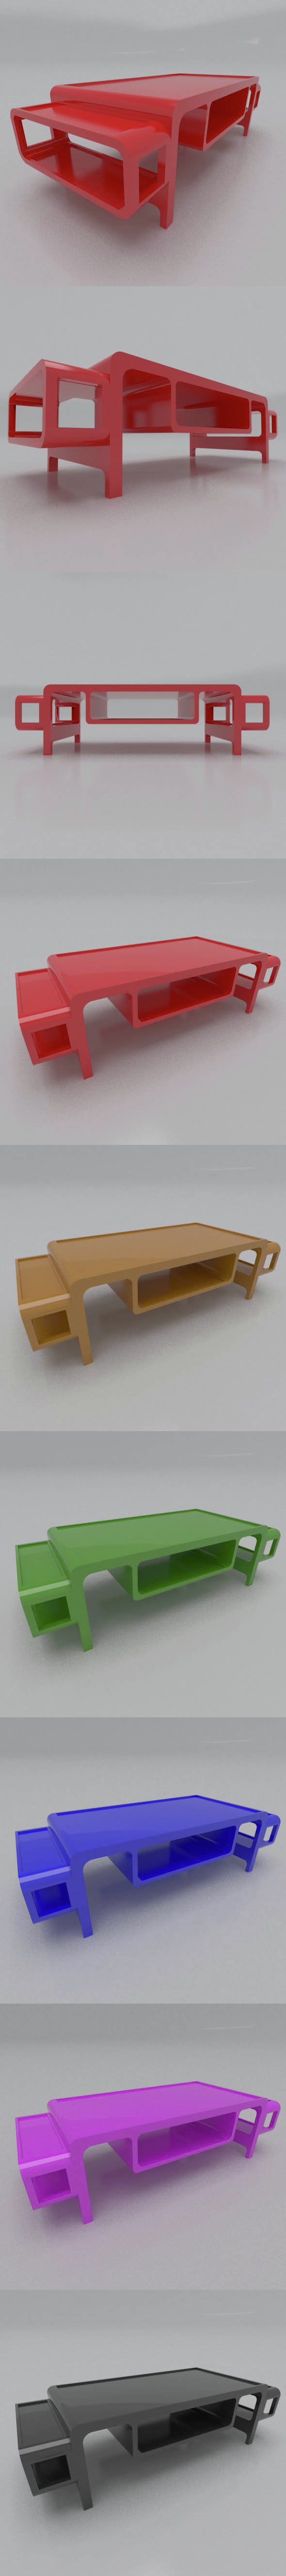 Modern low TABLE - 3Docean 15282945